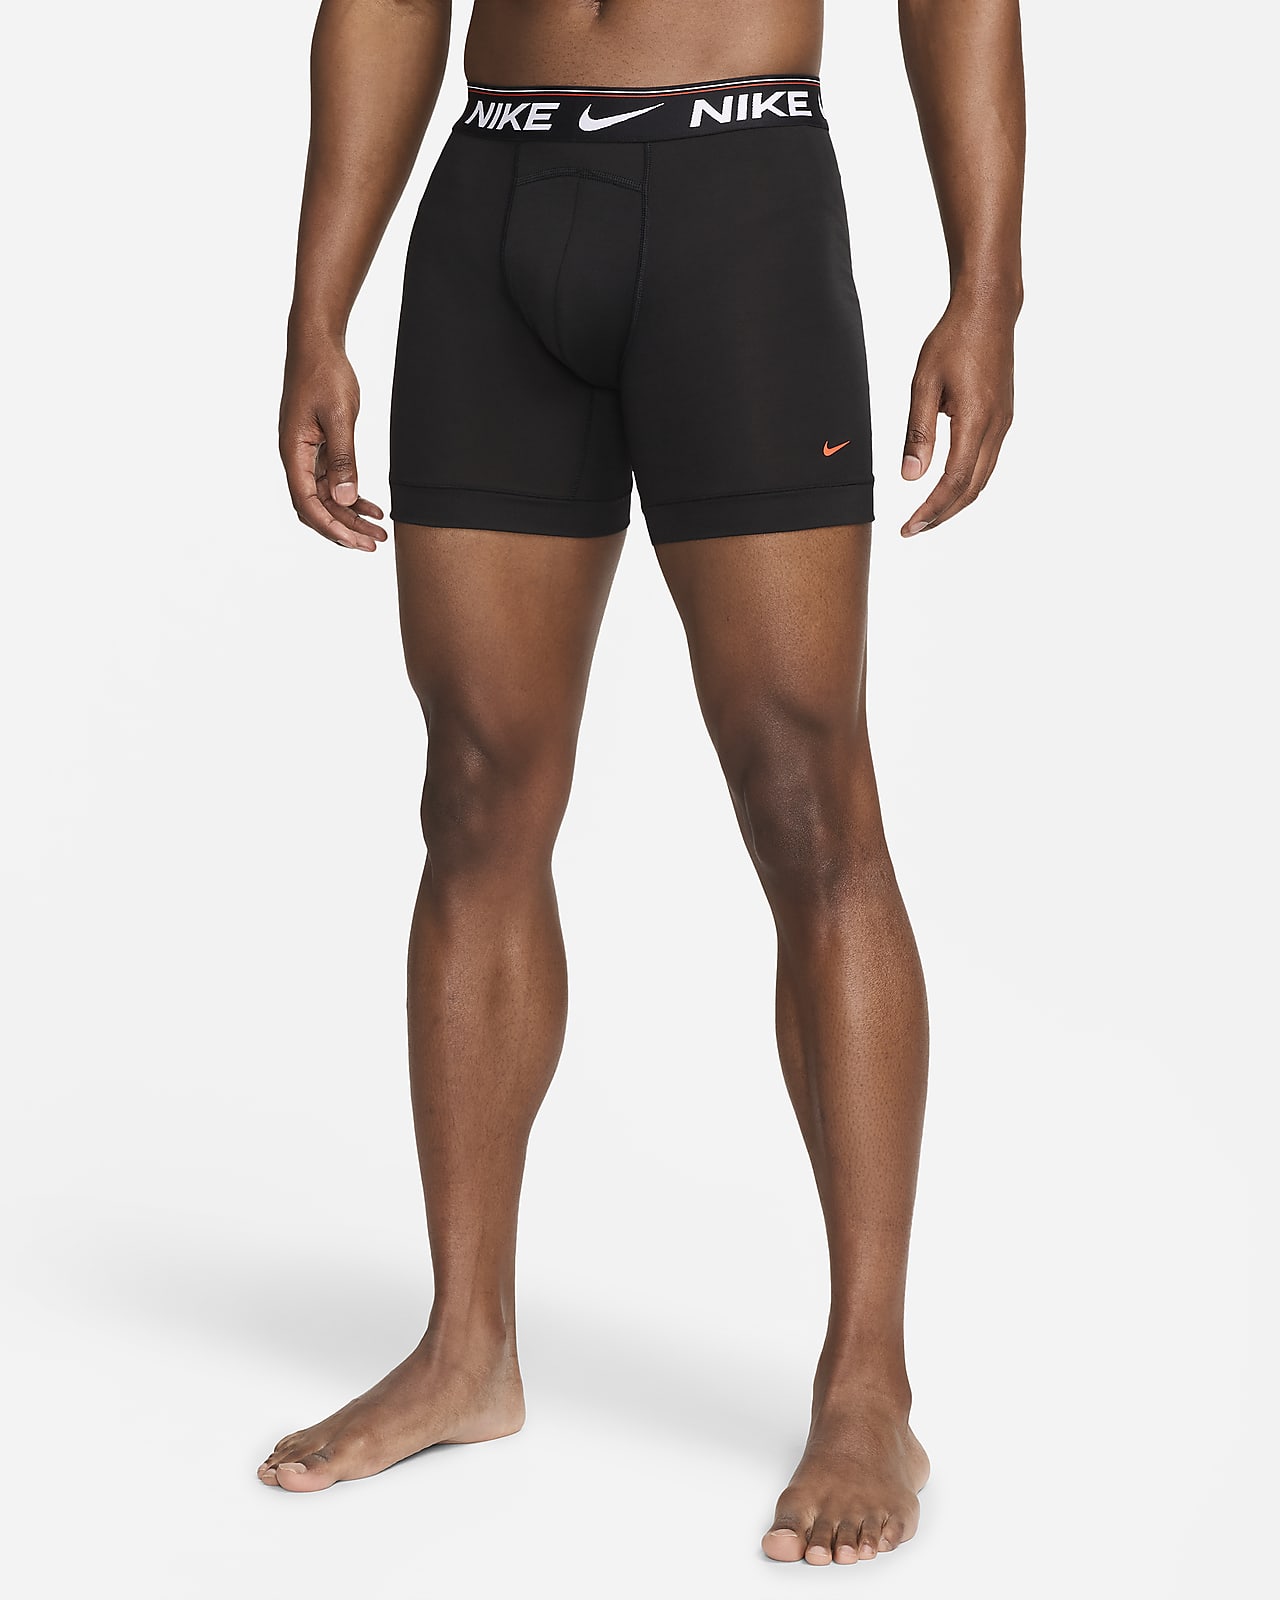 Ropa interior para hombre (paquete de 3) Nike Dri-FIT Ultra Comfort